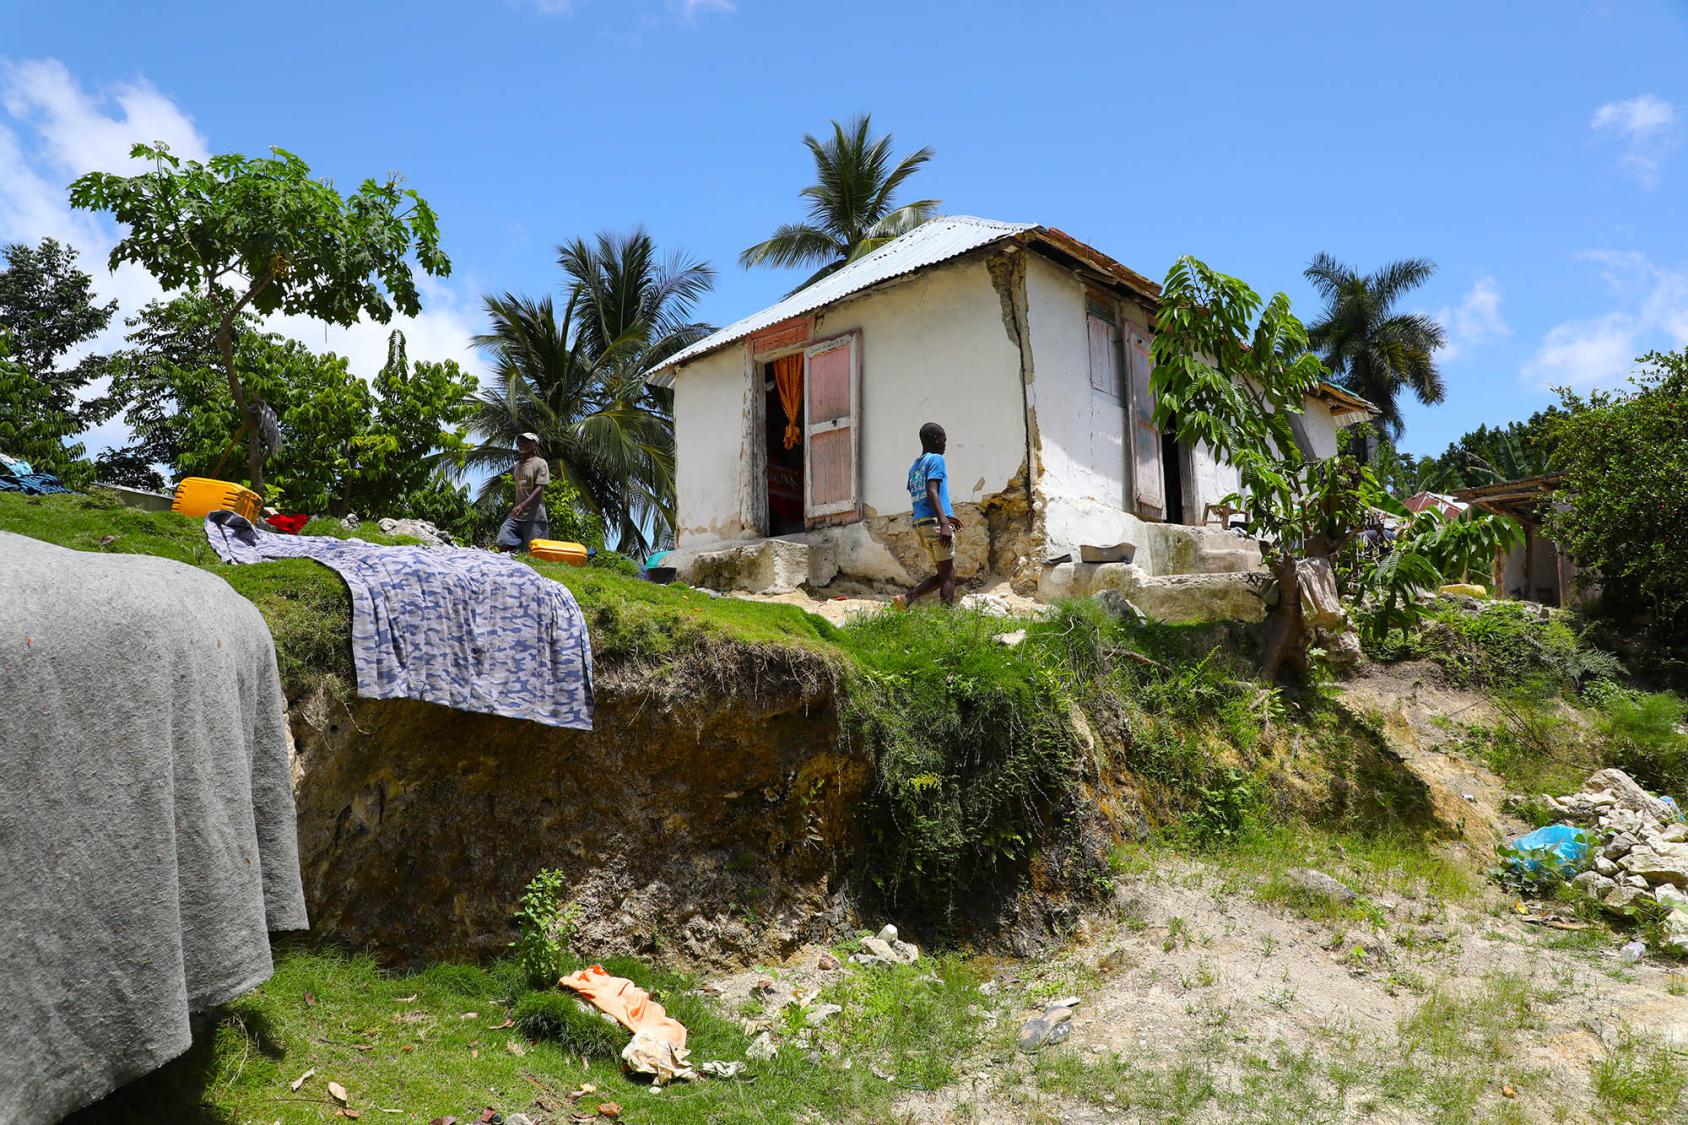 En Haïti, un jeune garçon se tient devant une petite maison délabrée construite en hauteur et une entourée de palmiers.